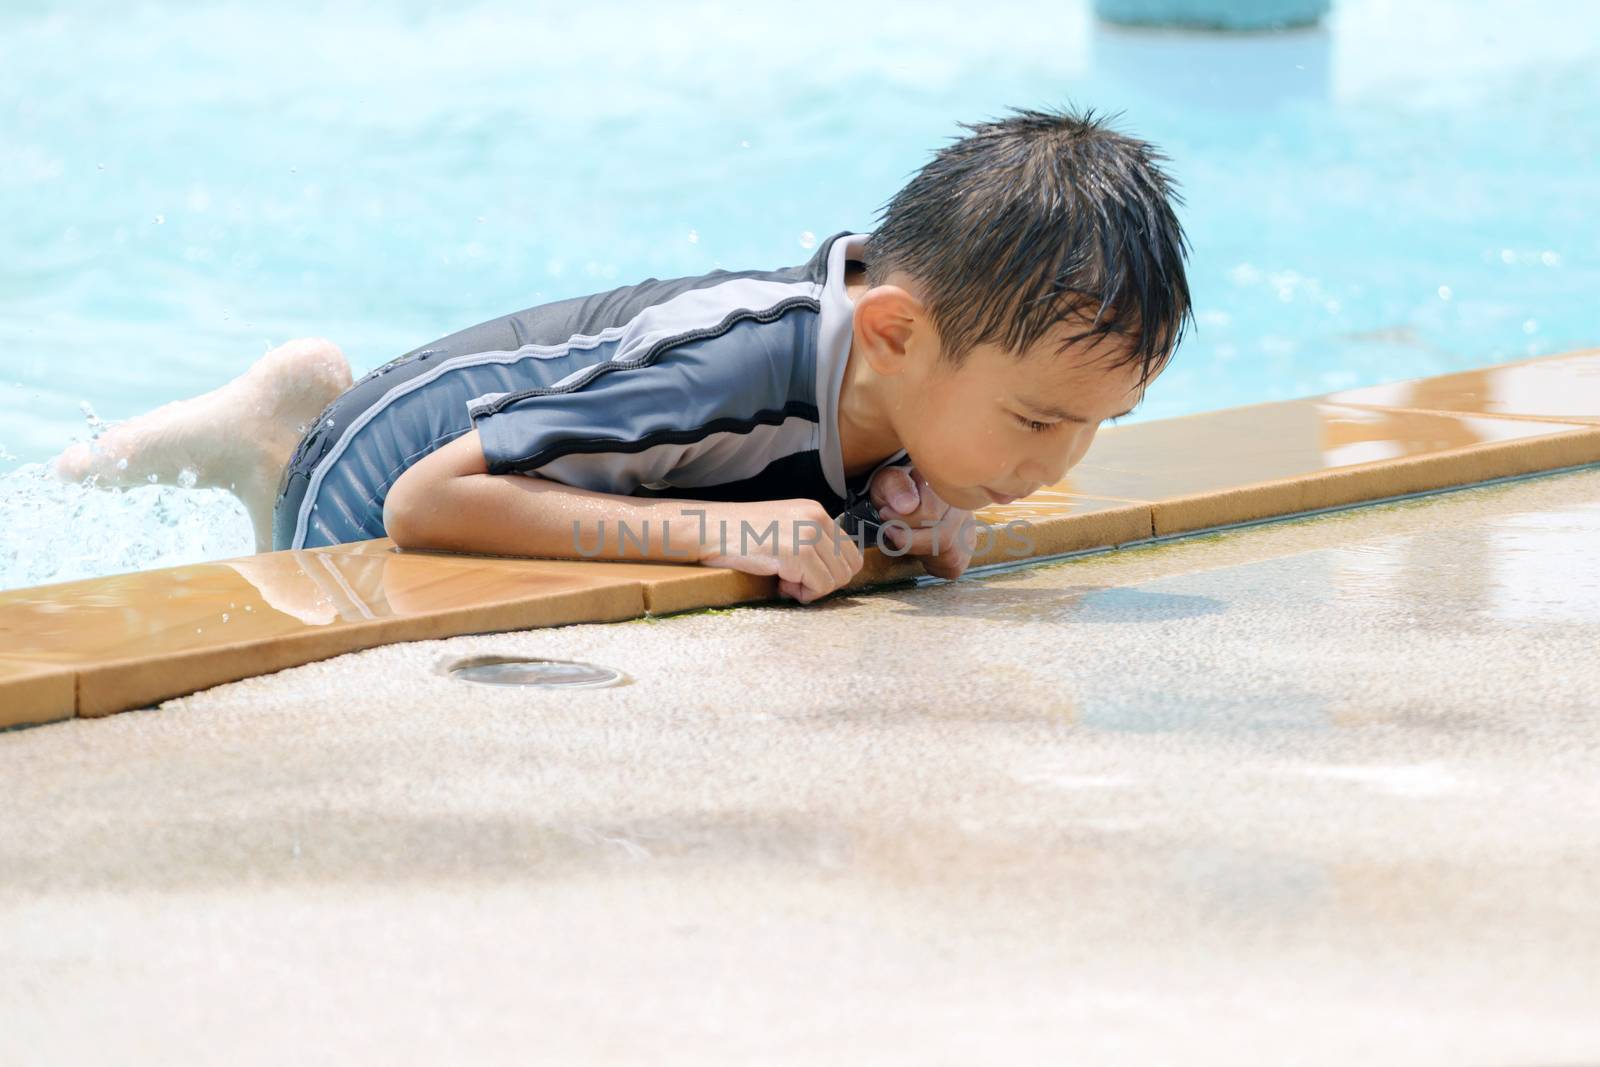 Asian boy in swimwear, swimming fun in the pool.